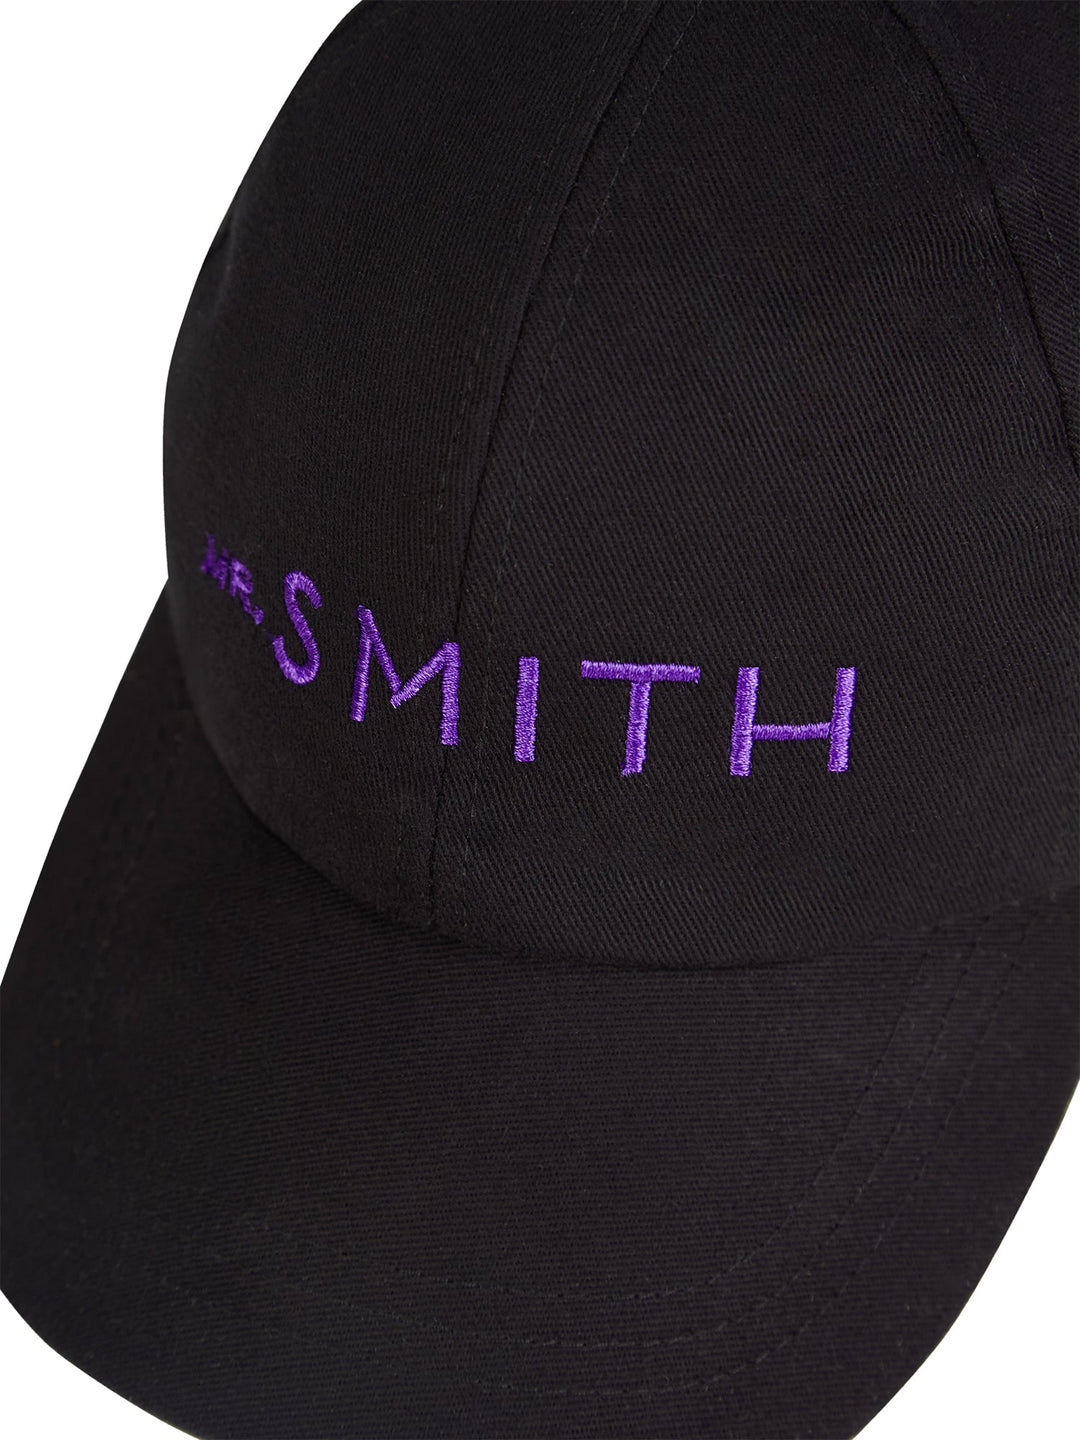 Mr. Smith Cap